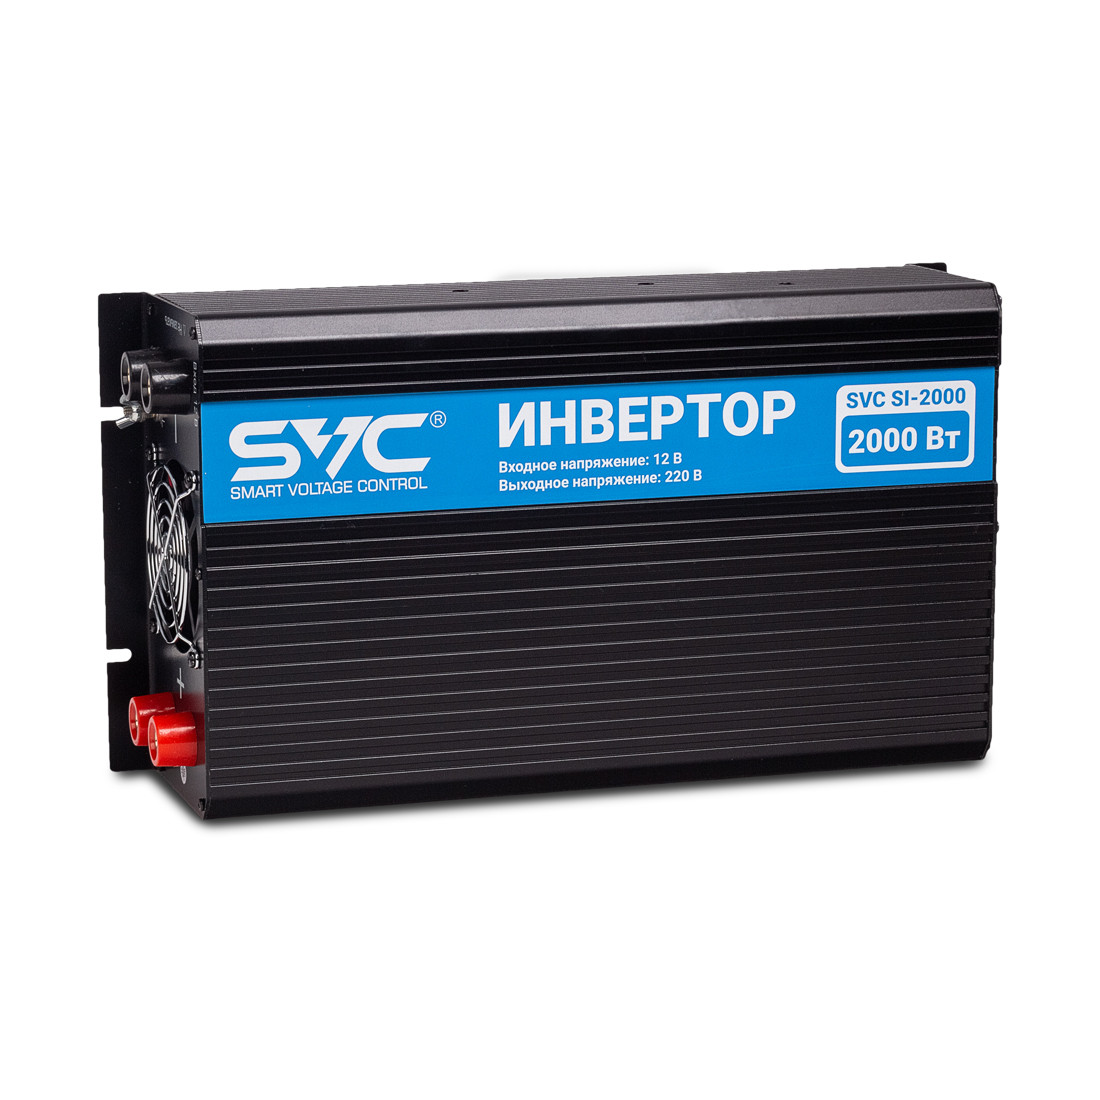 Инвертор SVC SI-2000 2000 Вт